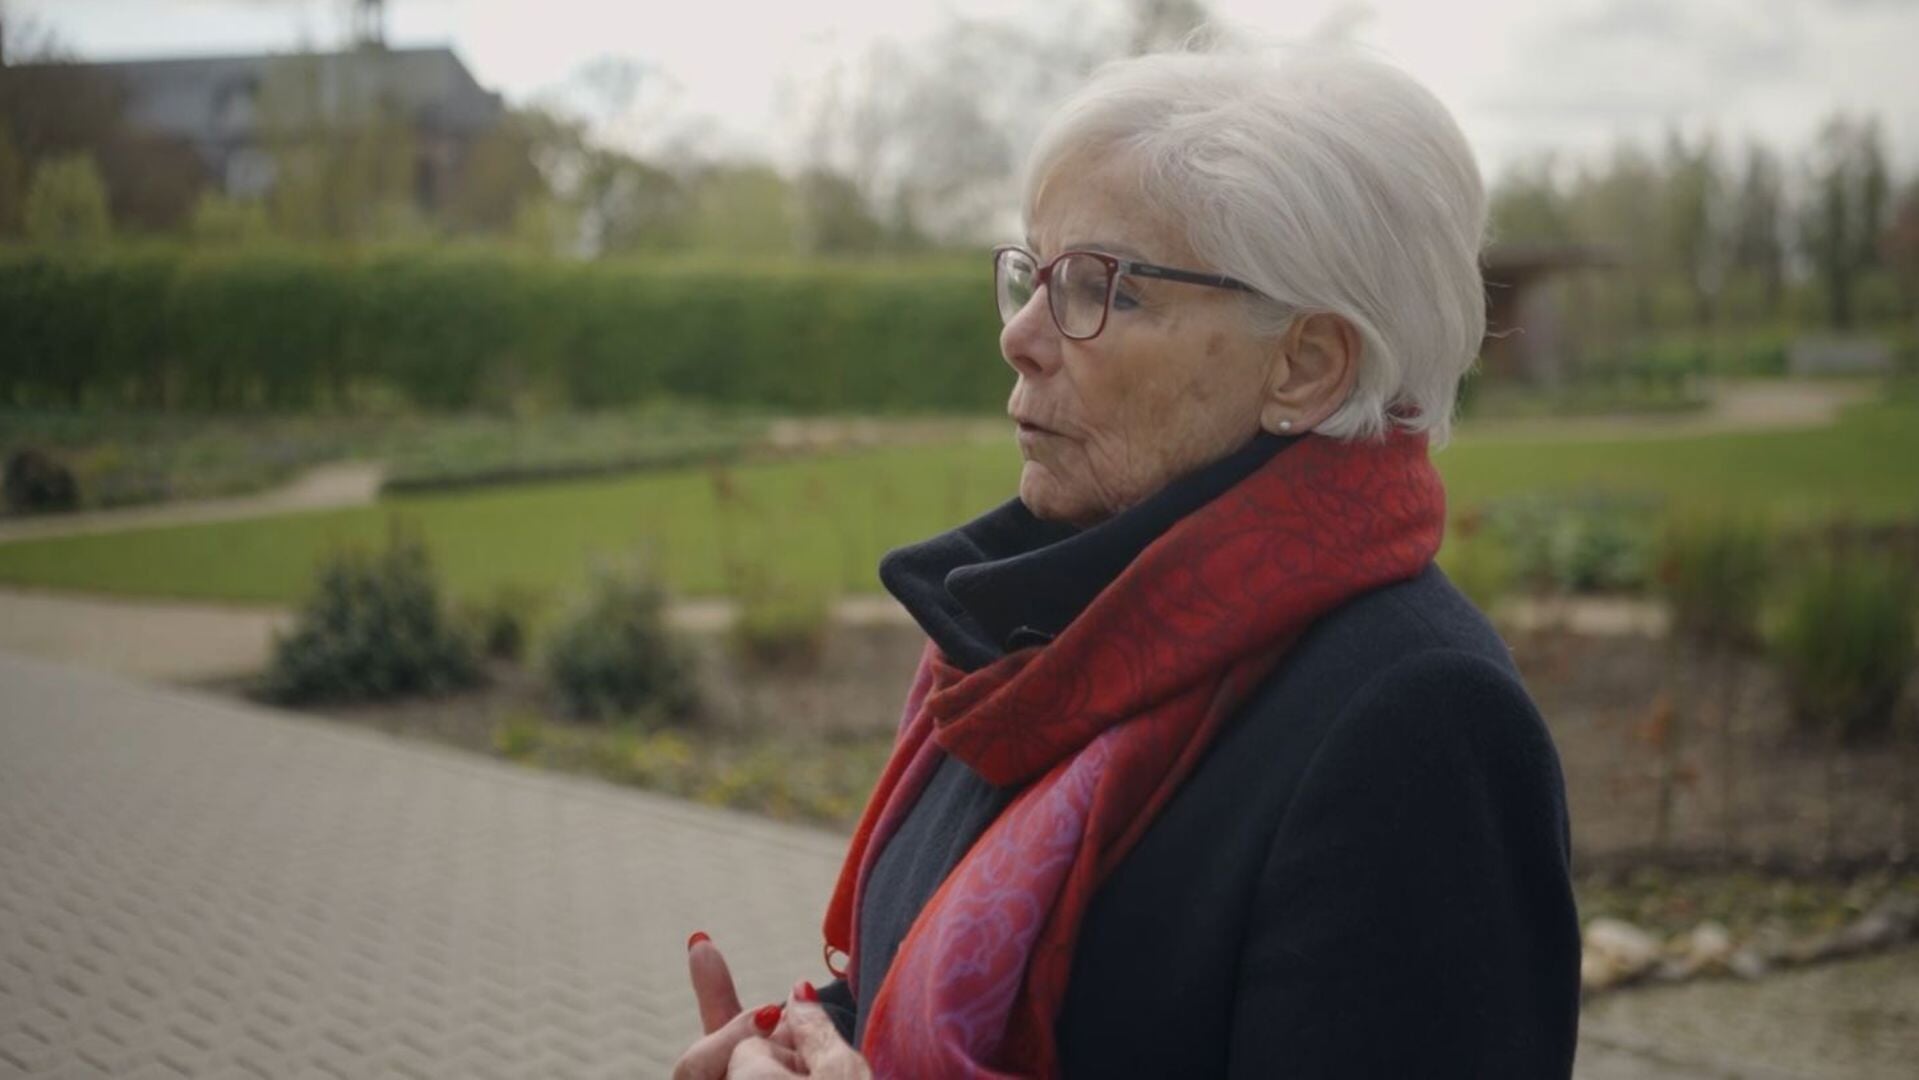 Cea van Dillen-Janssen aan het woord in de documentaire